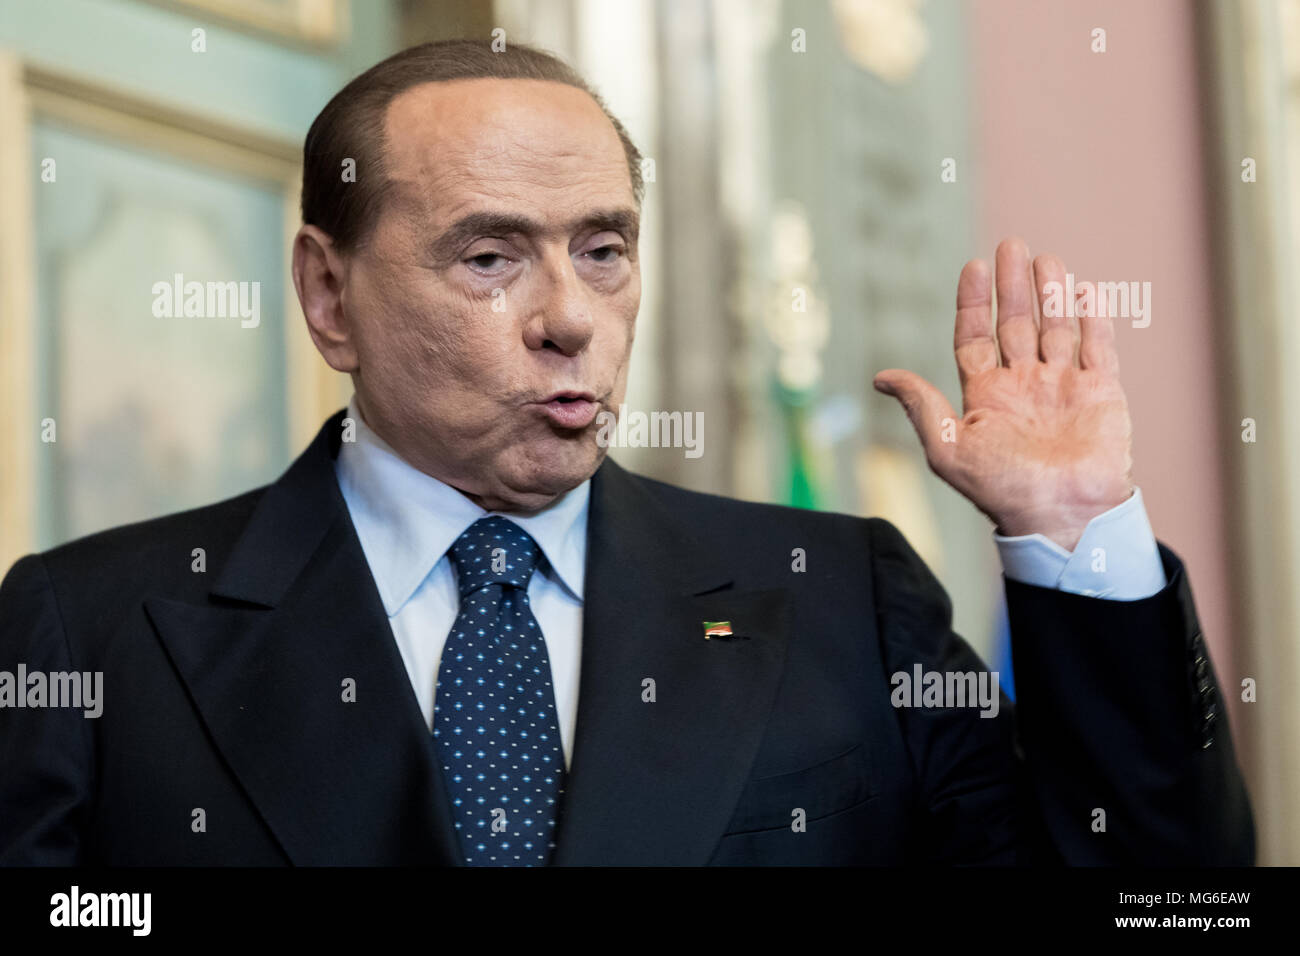 Silvio Berlusconi, leader of Forza Italia Party, after the press conference in the Senate of the Italian Republic. Rome, Italy, 15th April 2018. Stock Photo